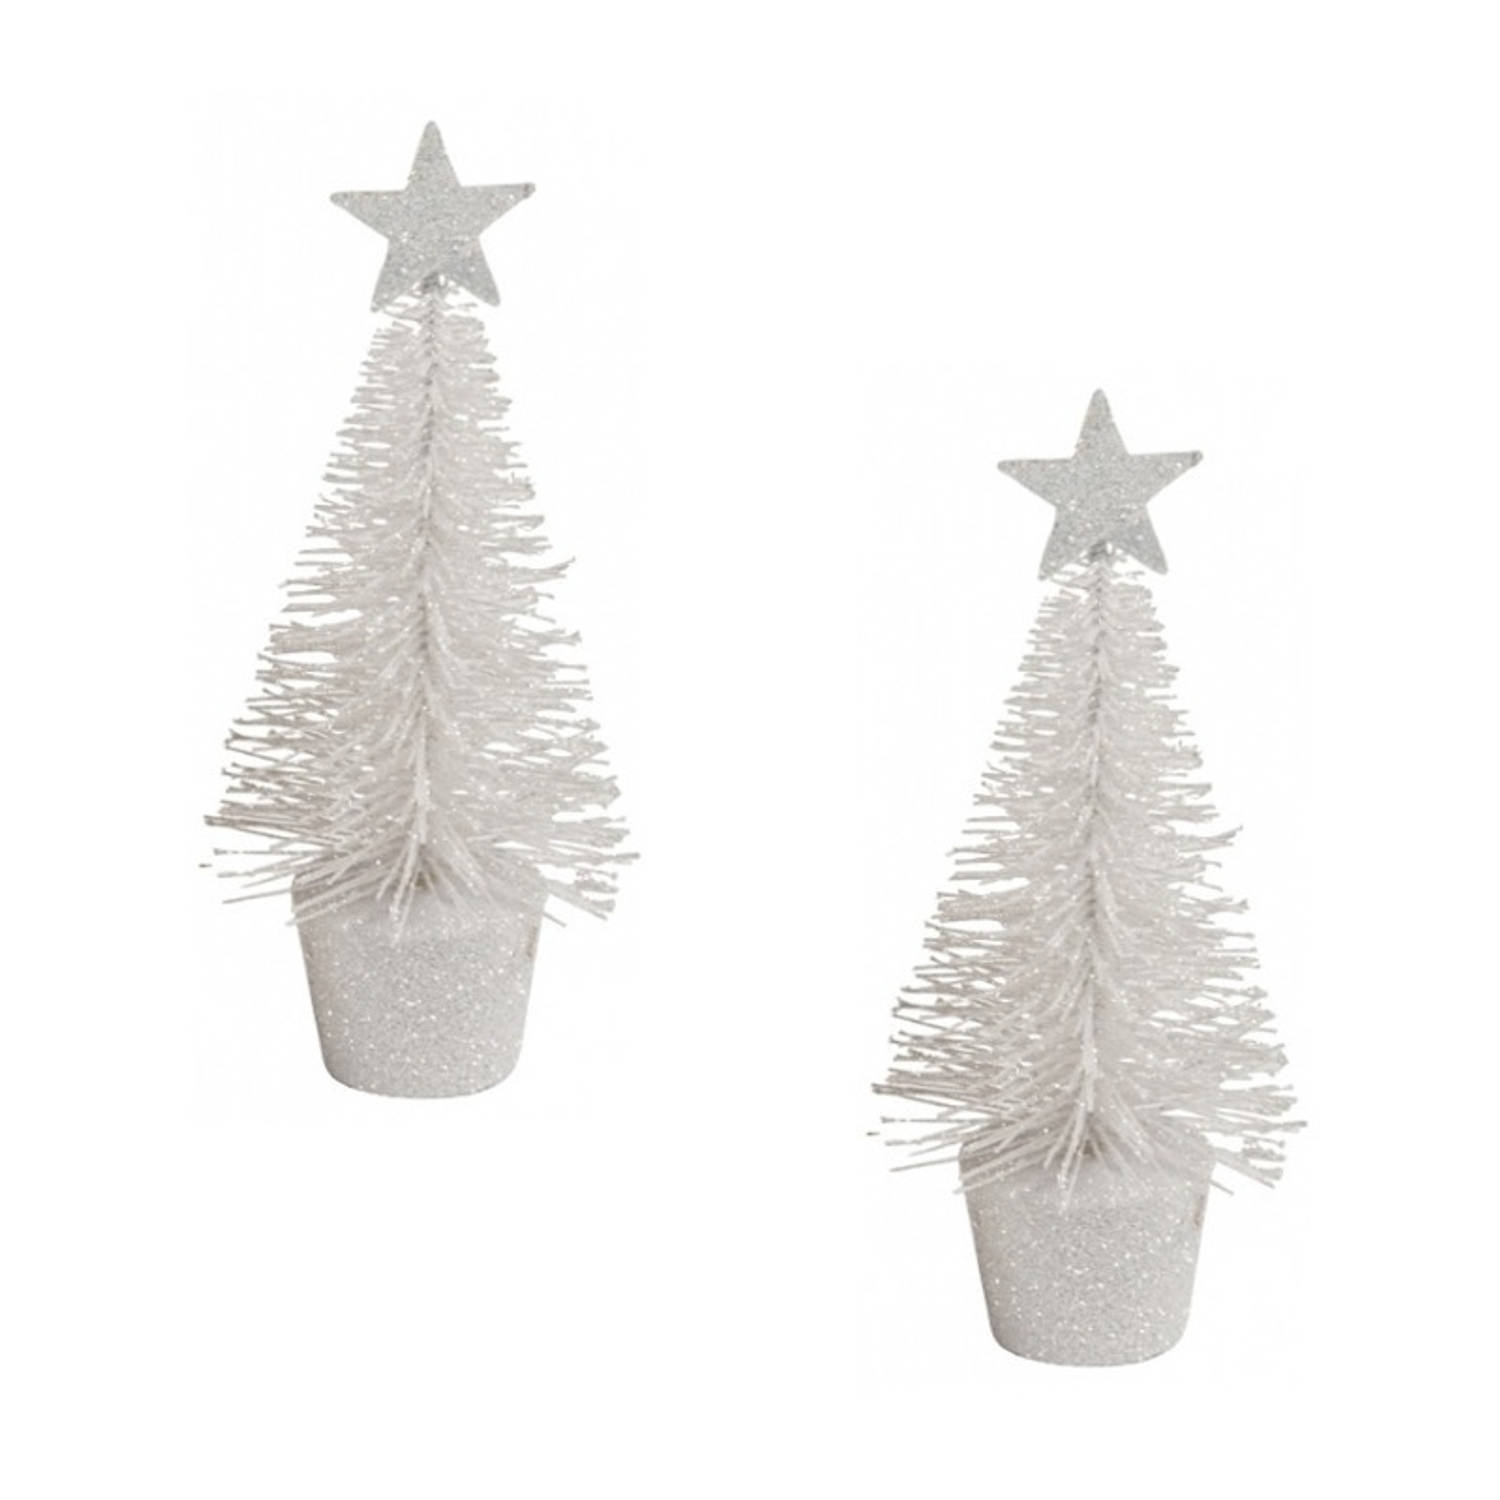 2x Stuks Klein Wit Kerstboompje 15 Cm Kerstdecoratie-kerstversiering Kunstkerstboom